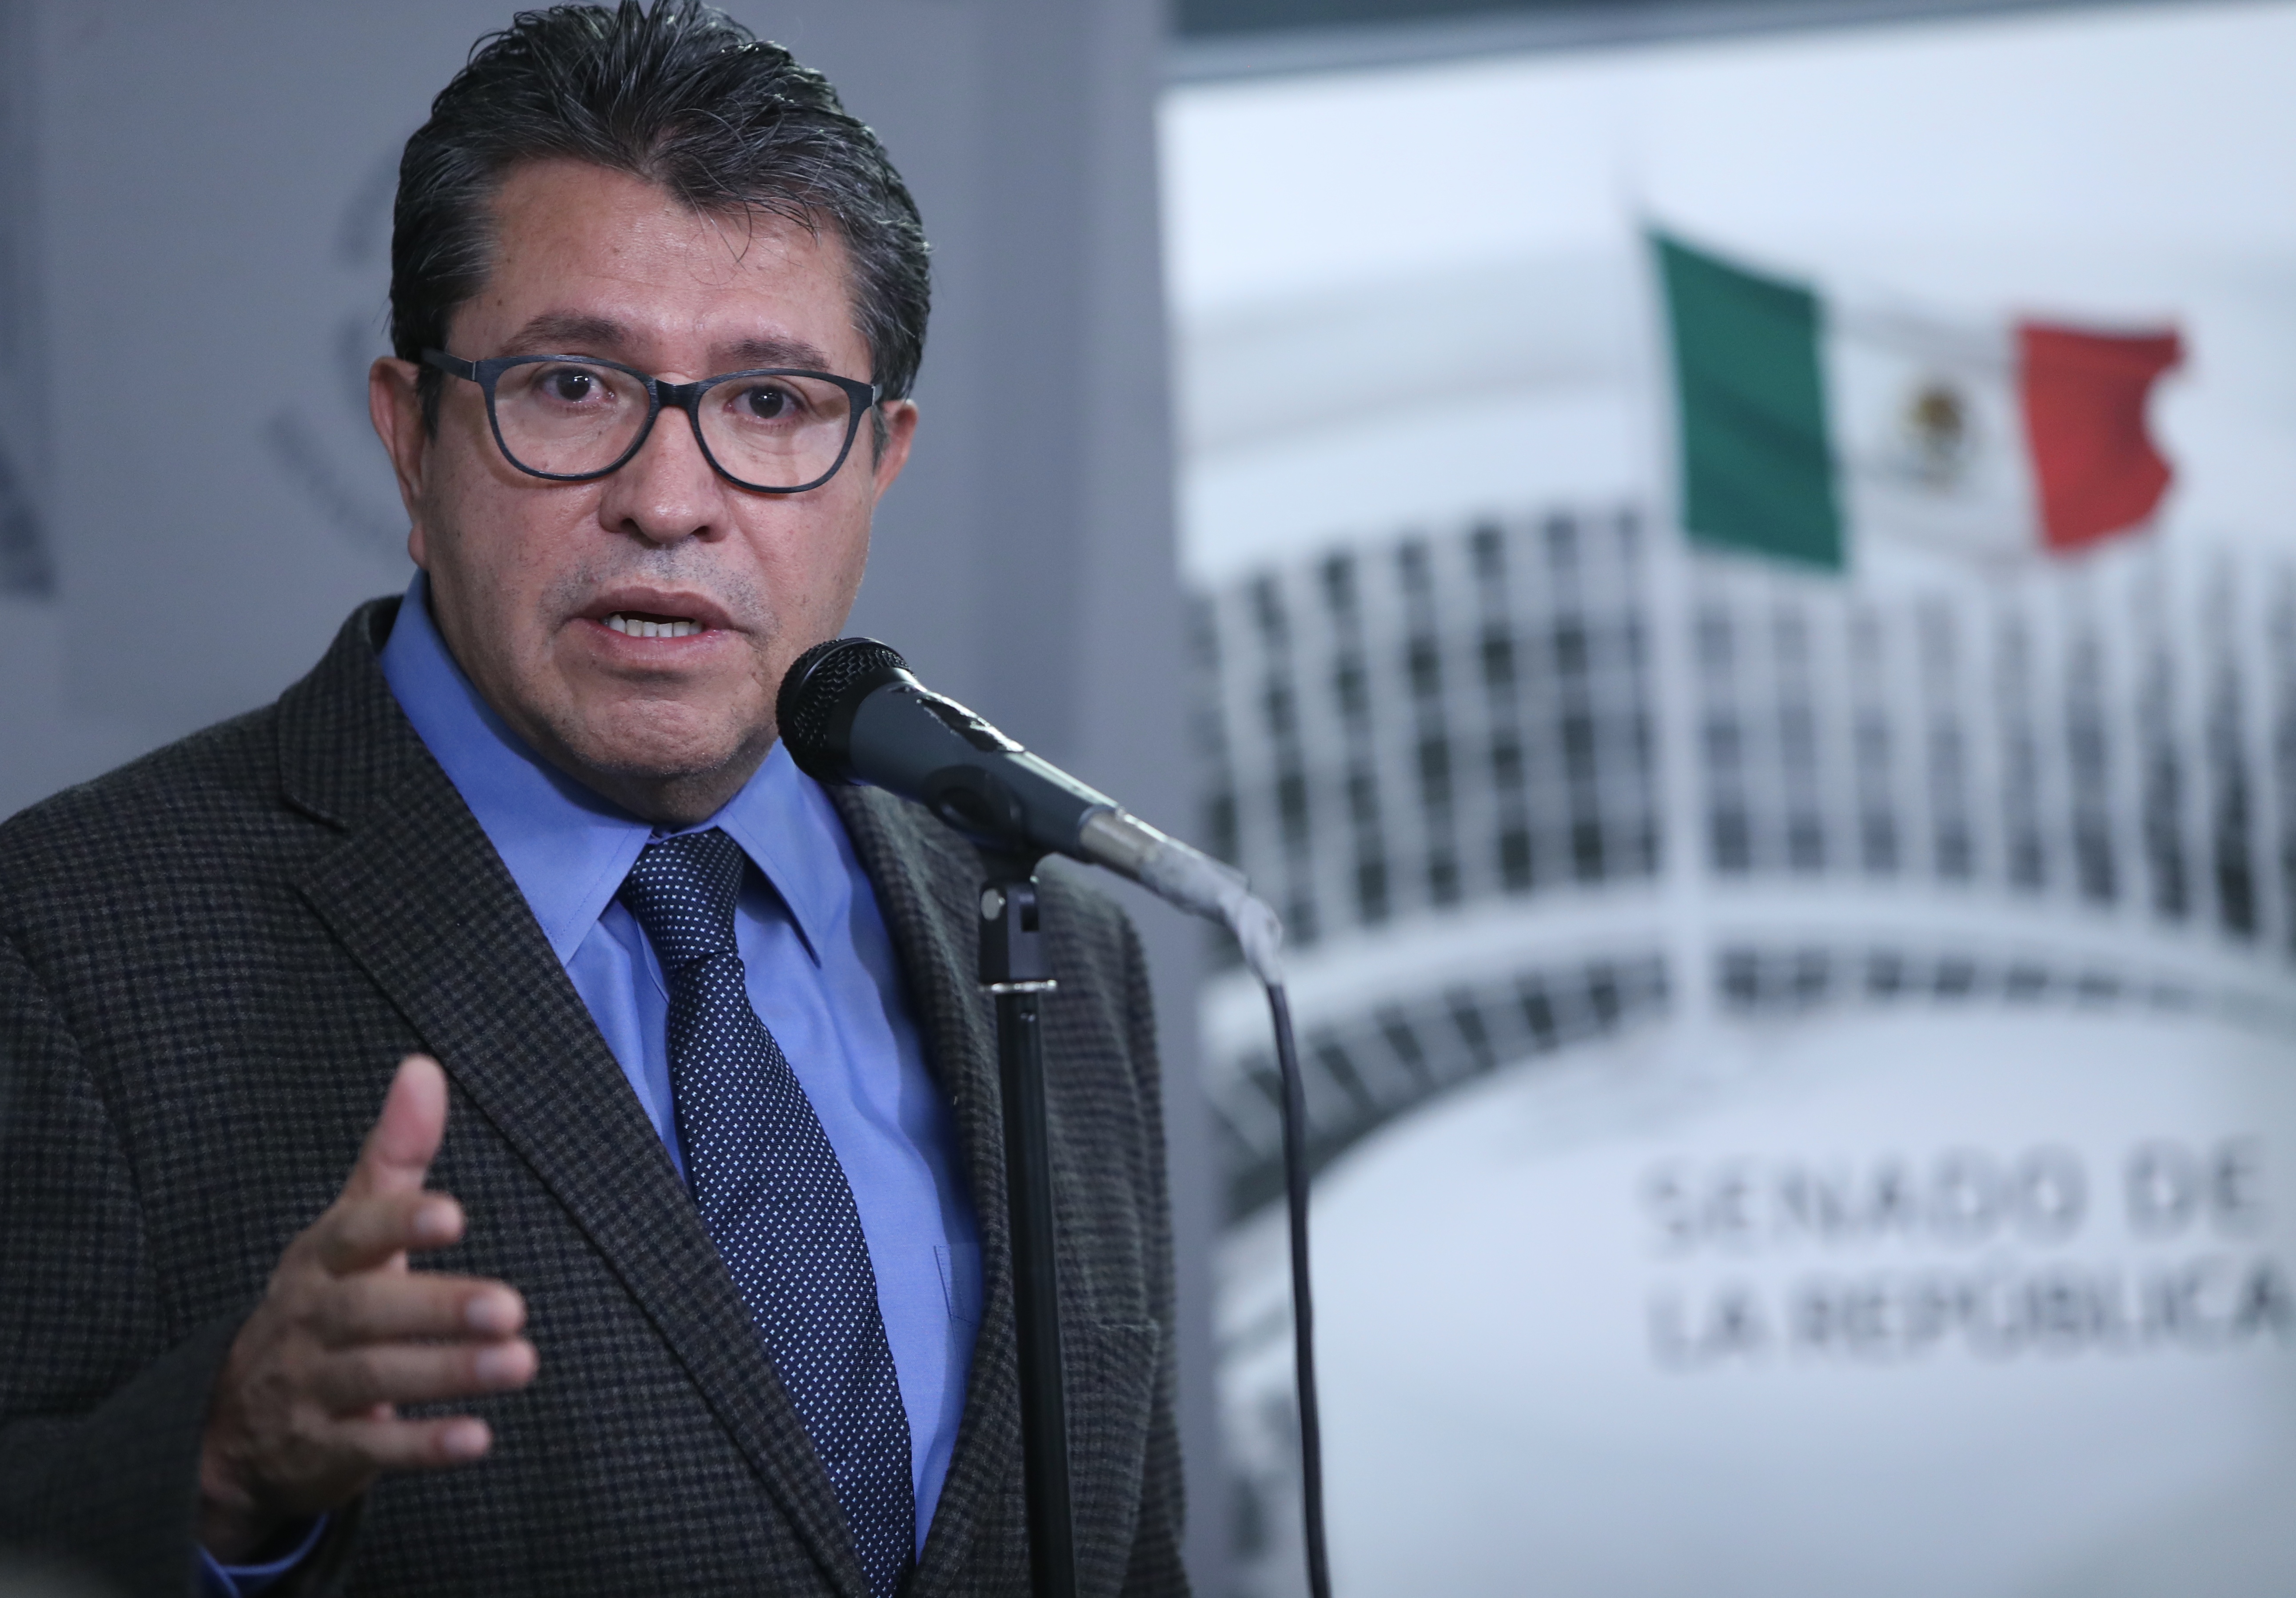  Senado plural, austero, eficaz y productivo, ratifica el senador Ricardo Monreal